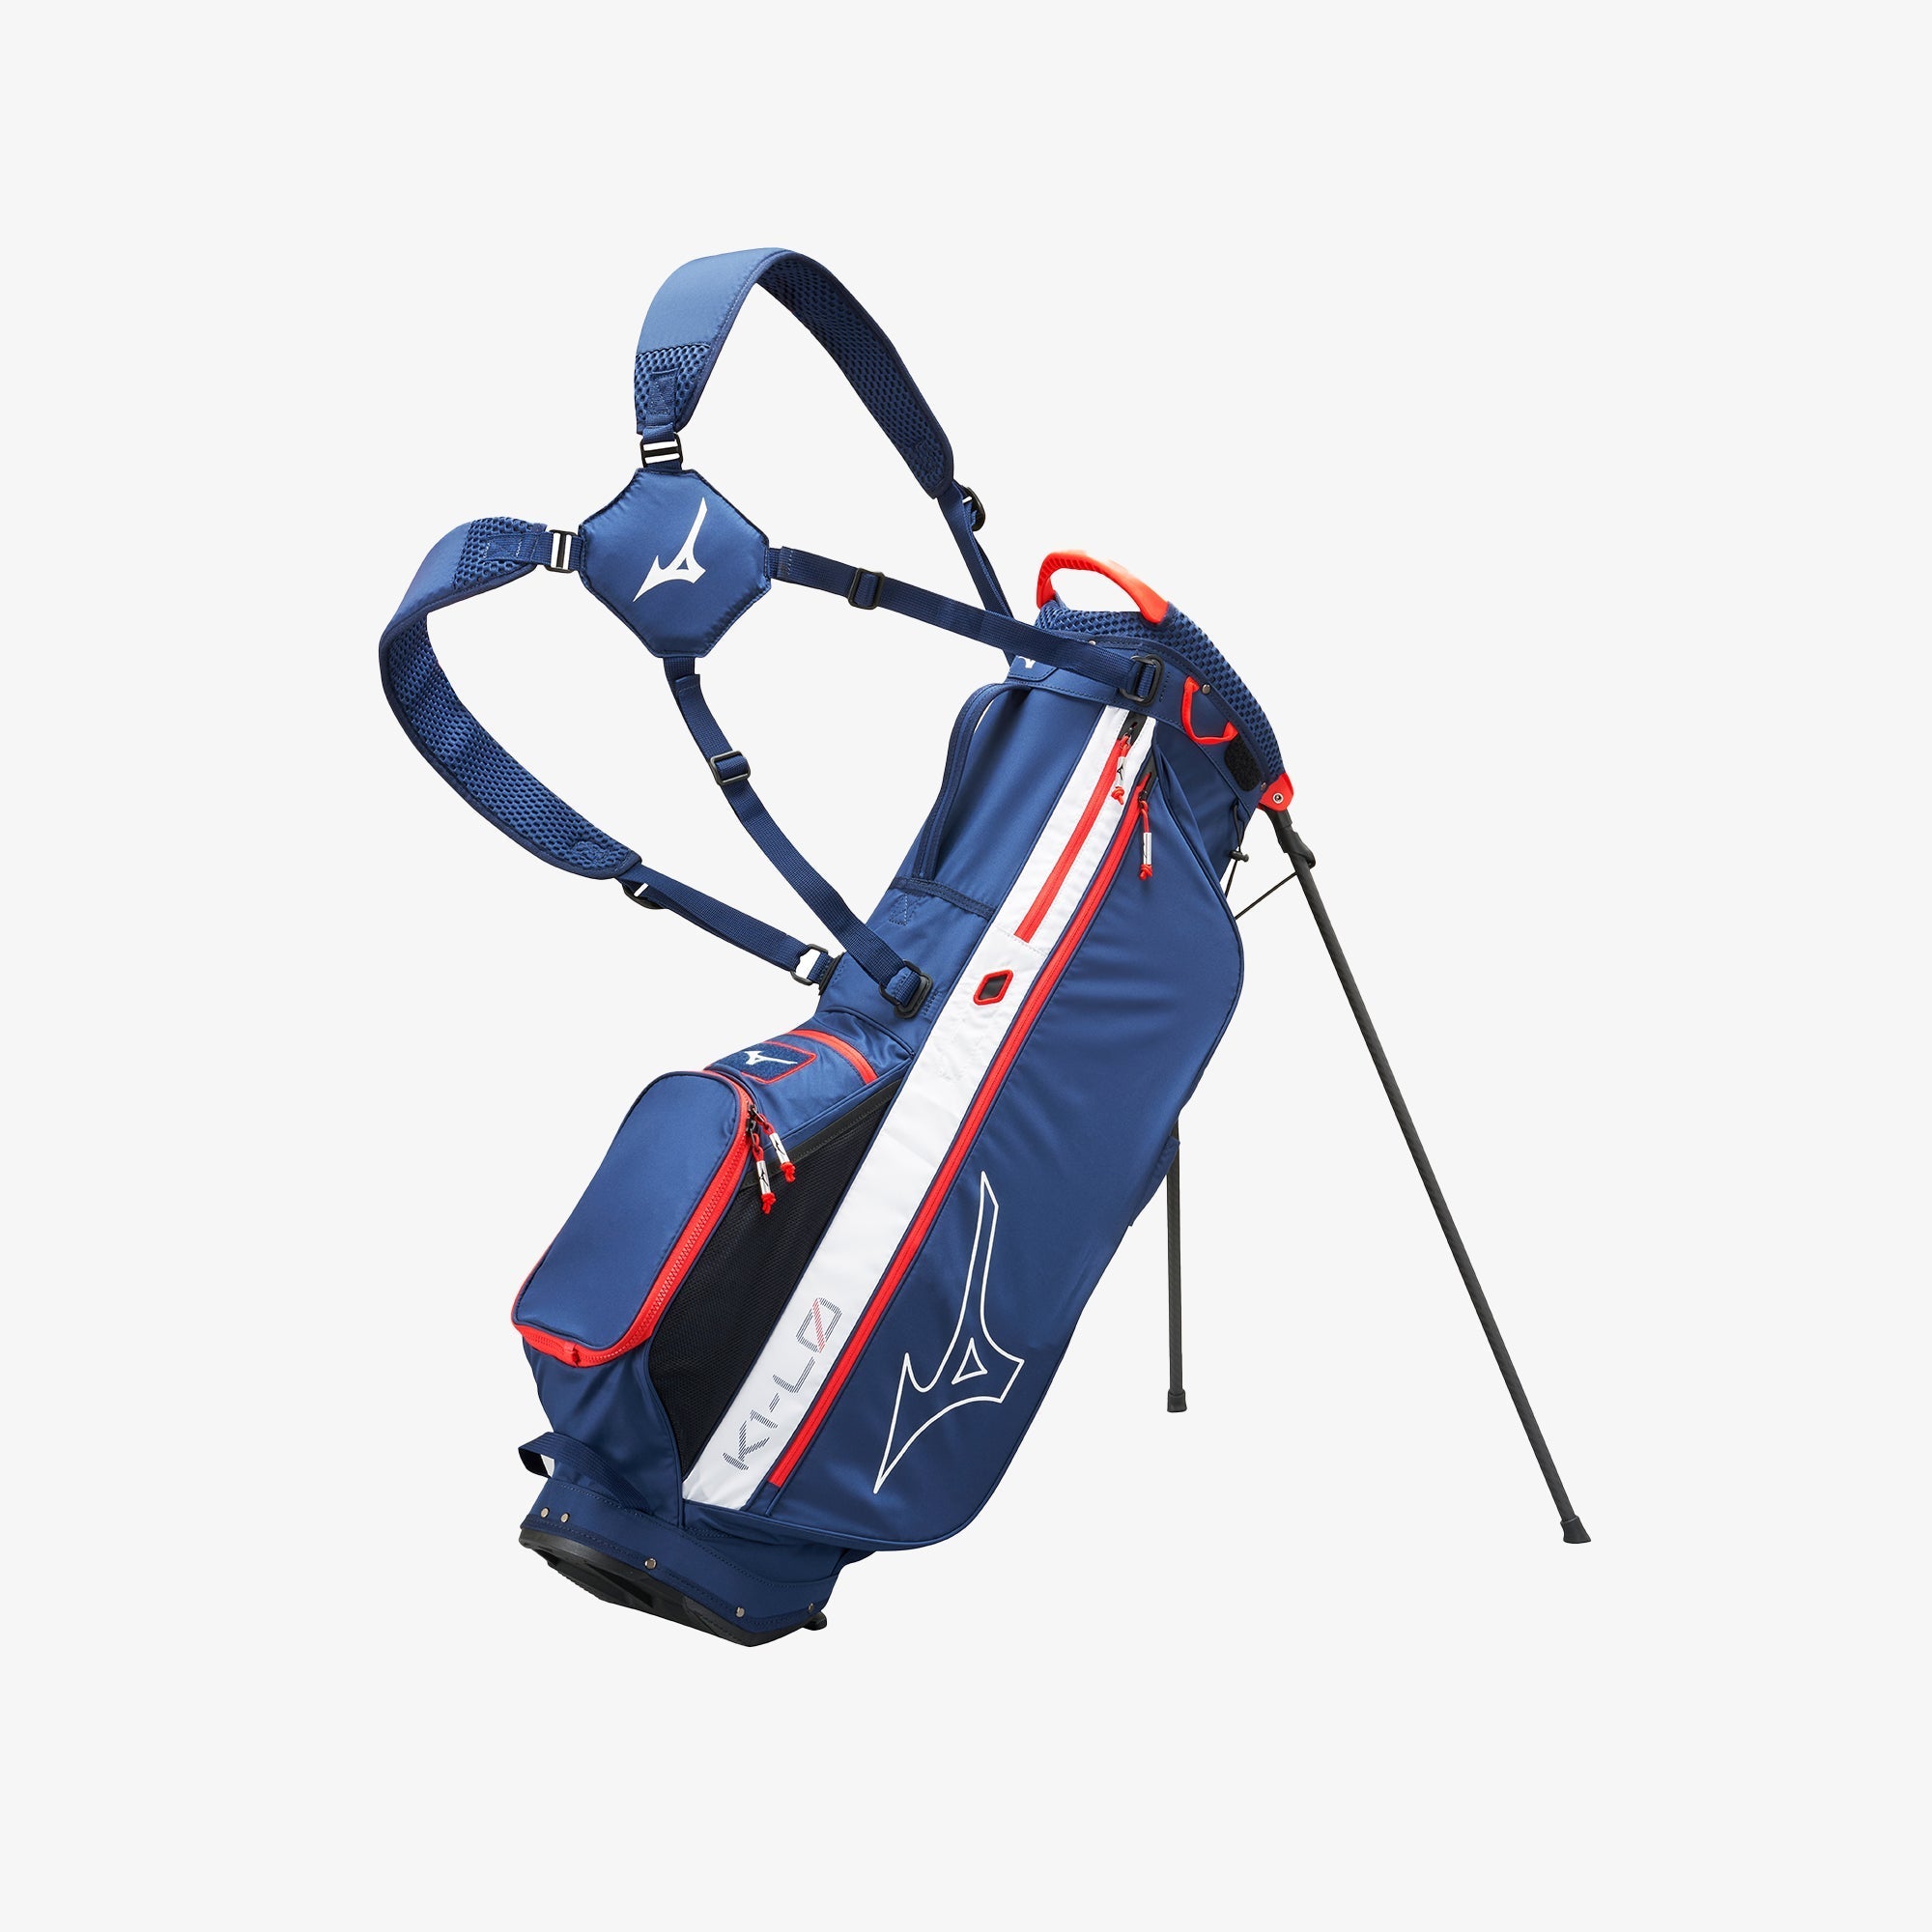 Waterproof Golf Bags  The Best Waterproof Bags for 2022